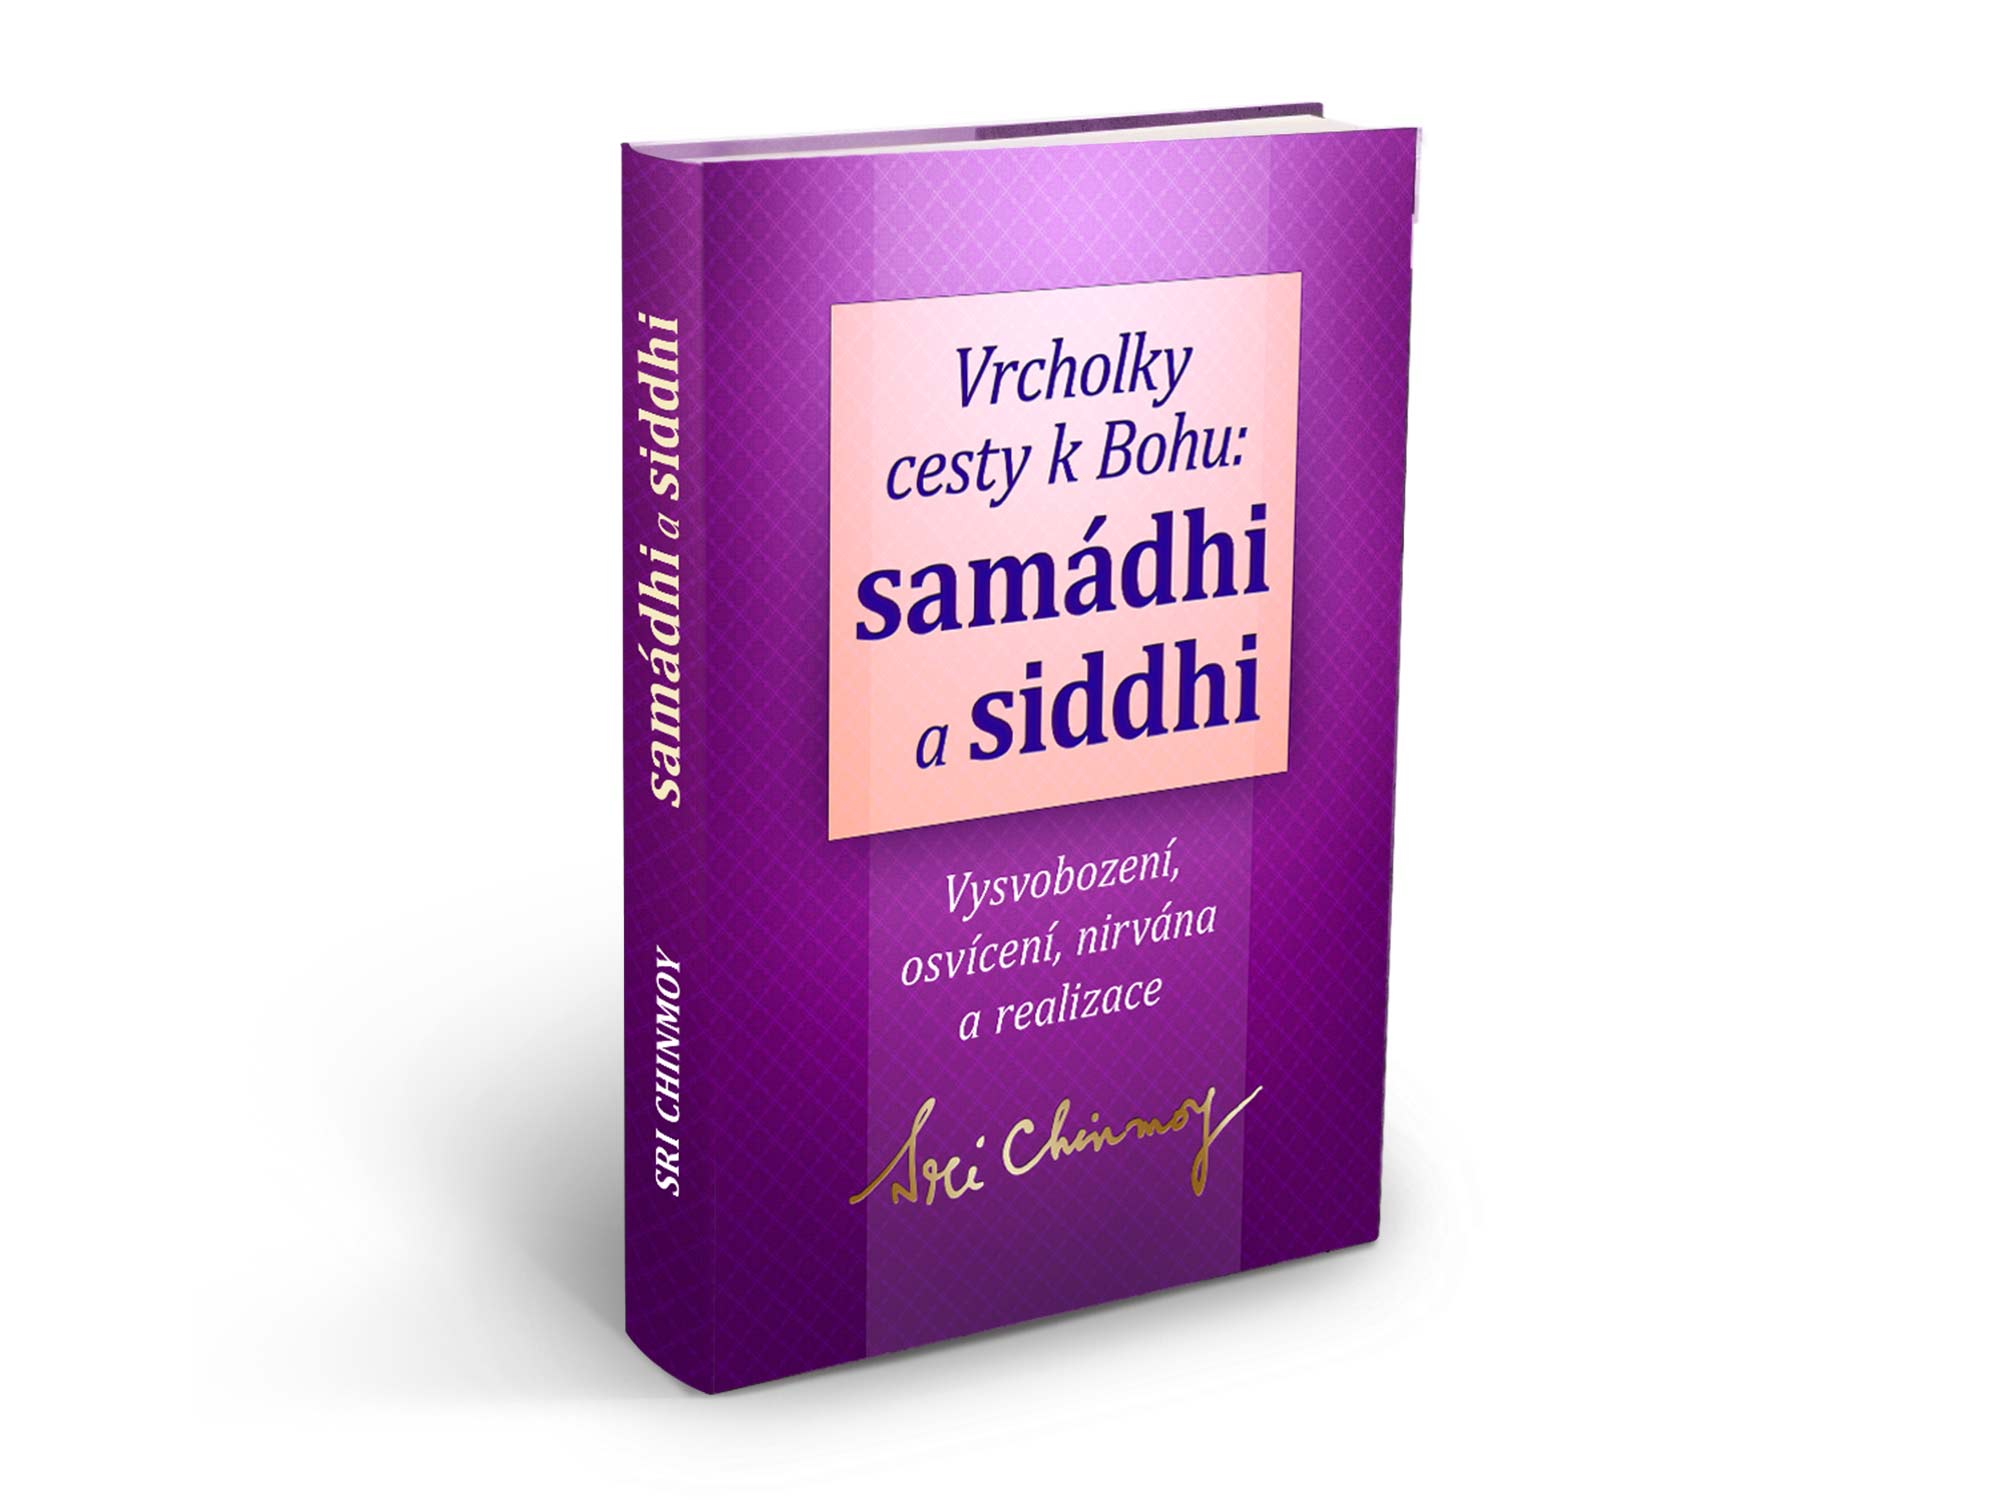 Samádhi a siddhi: Sri Chinmoy